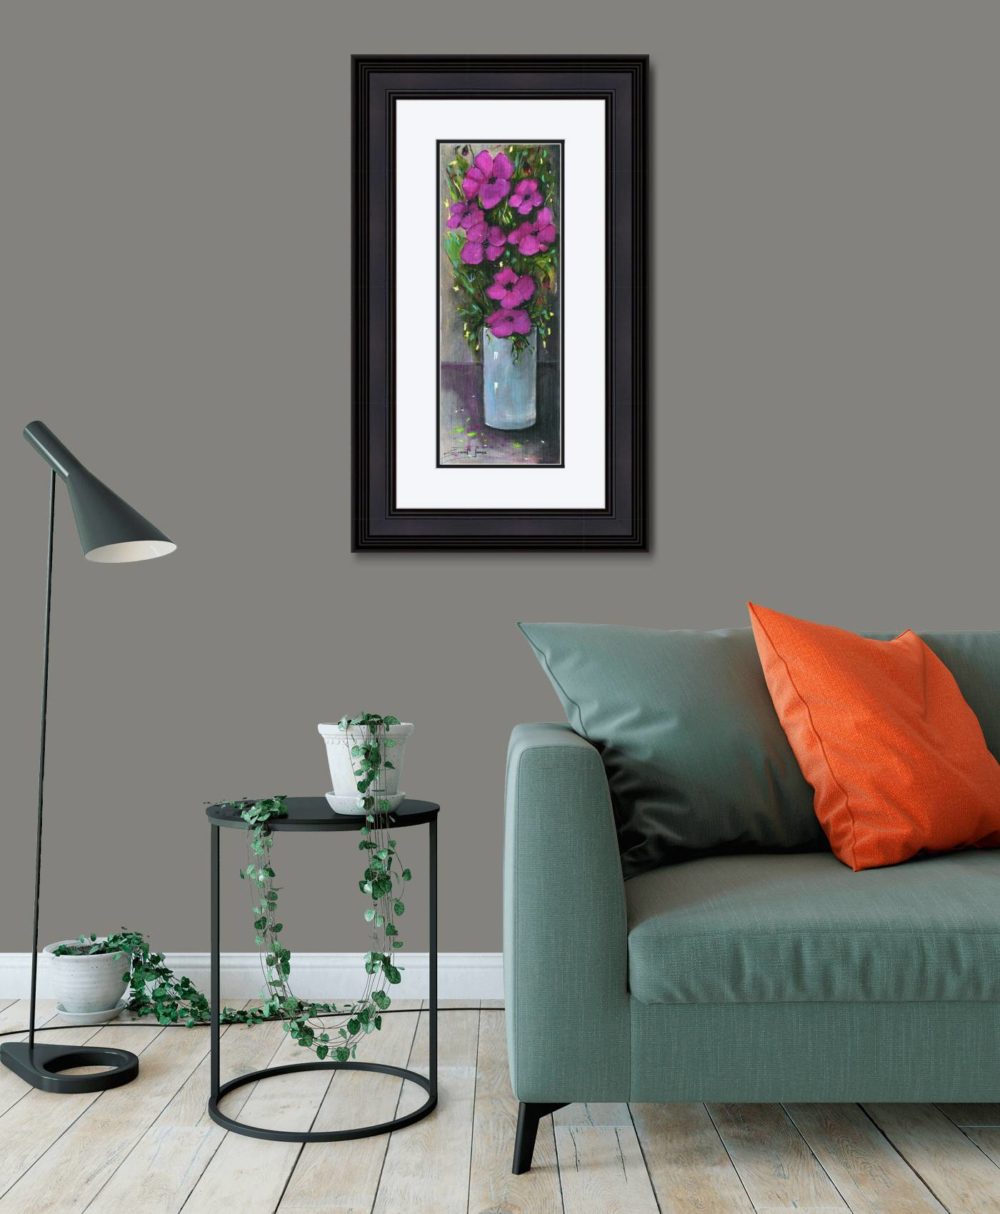 Purple Flowers Print (Medium) in Black Frame in Room